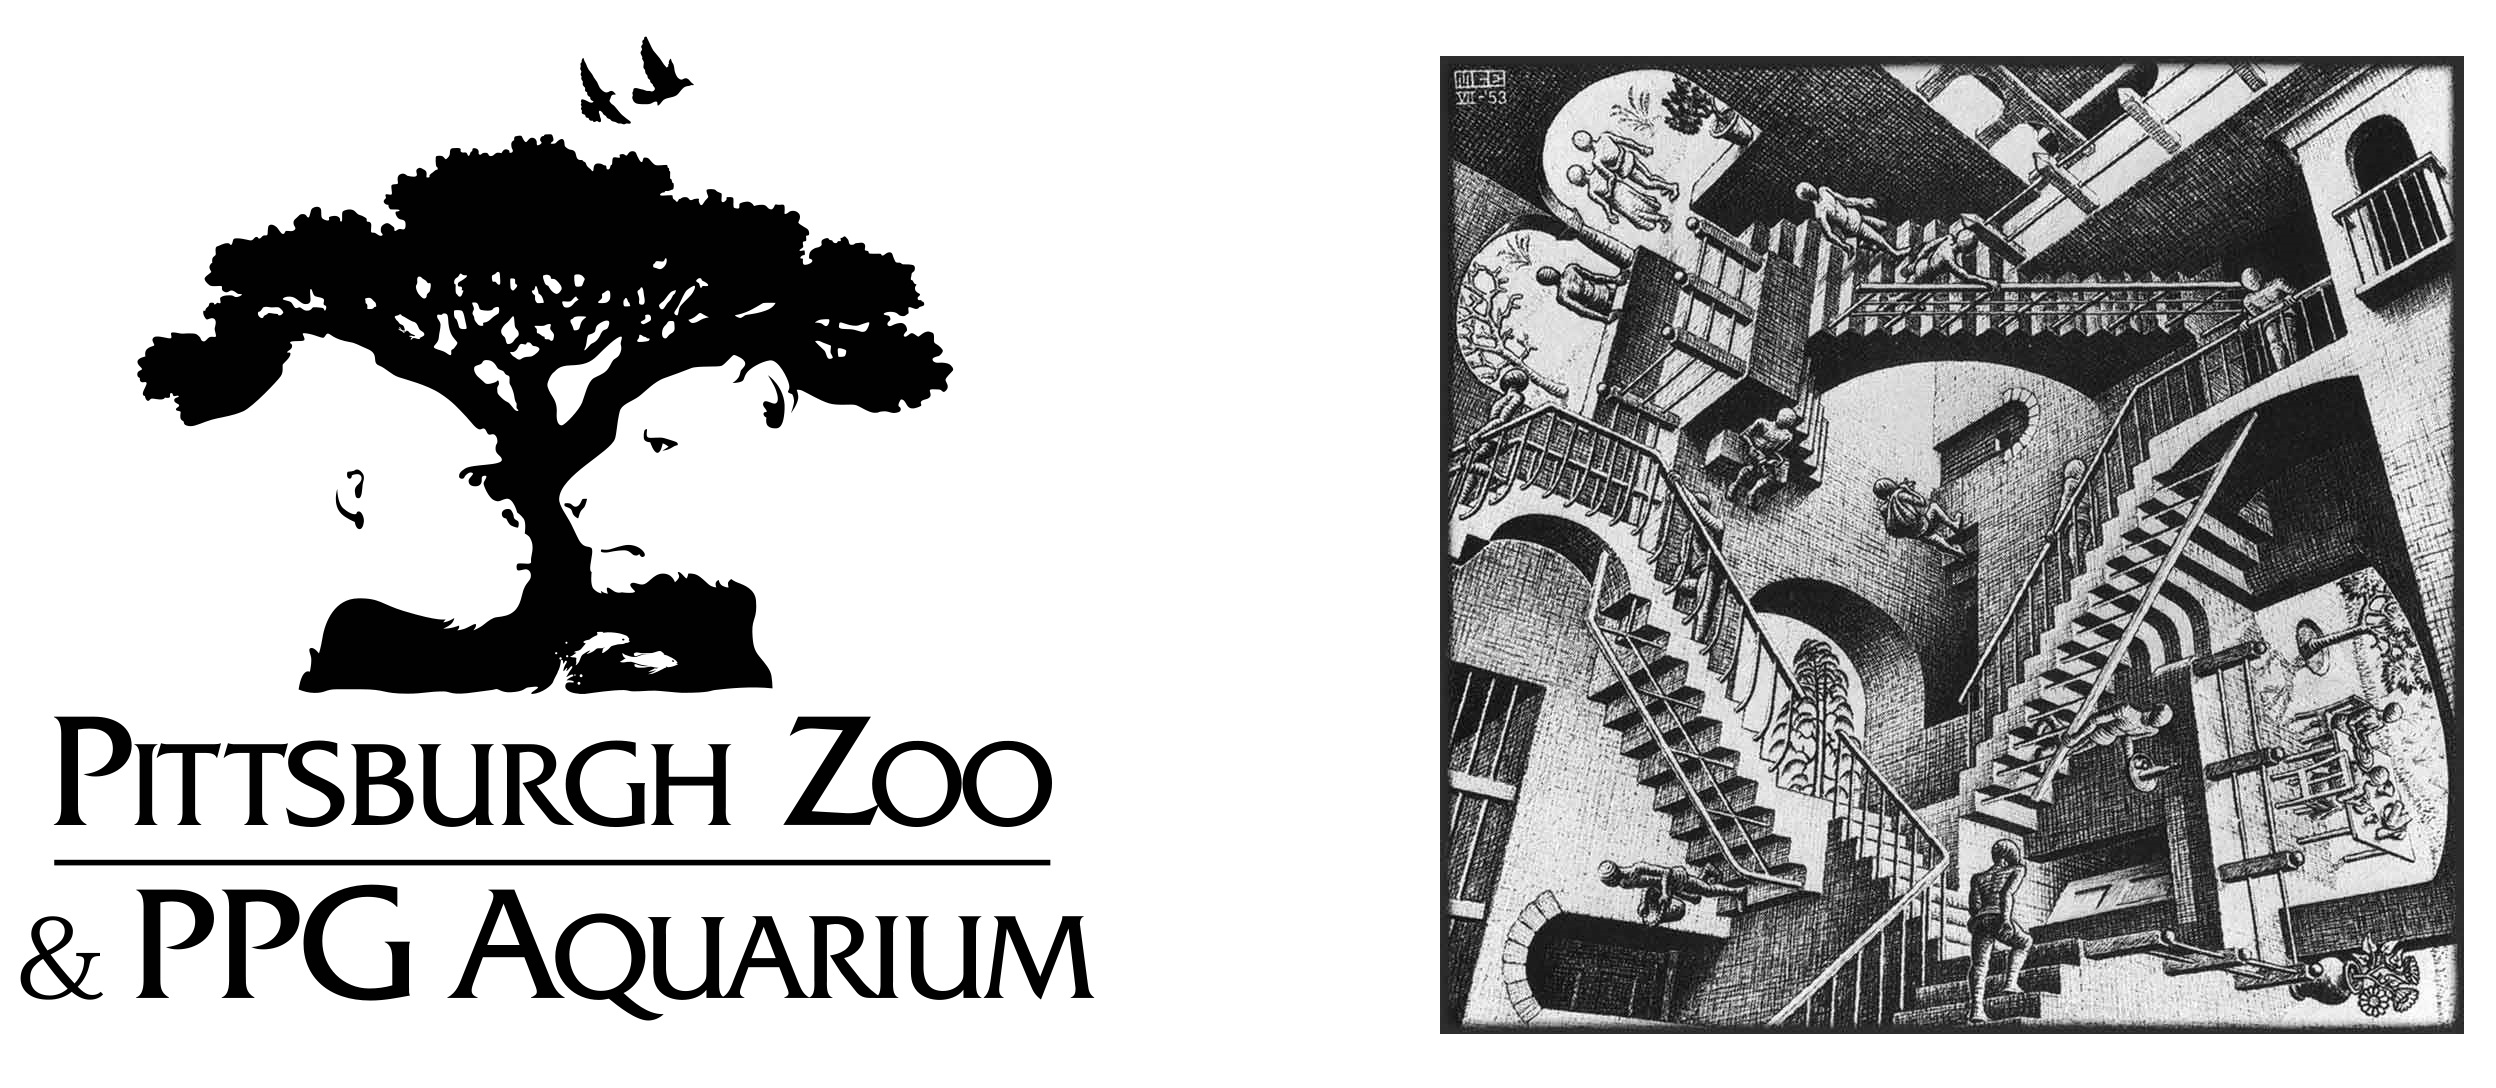 Logotipo do Pittsburgh Zoo e gravura de Escher